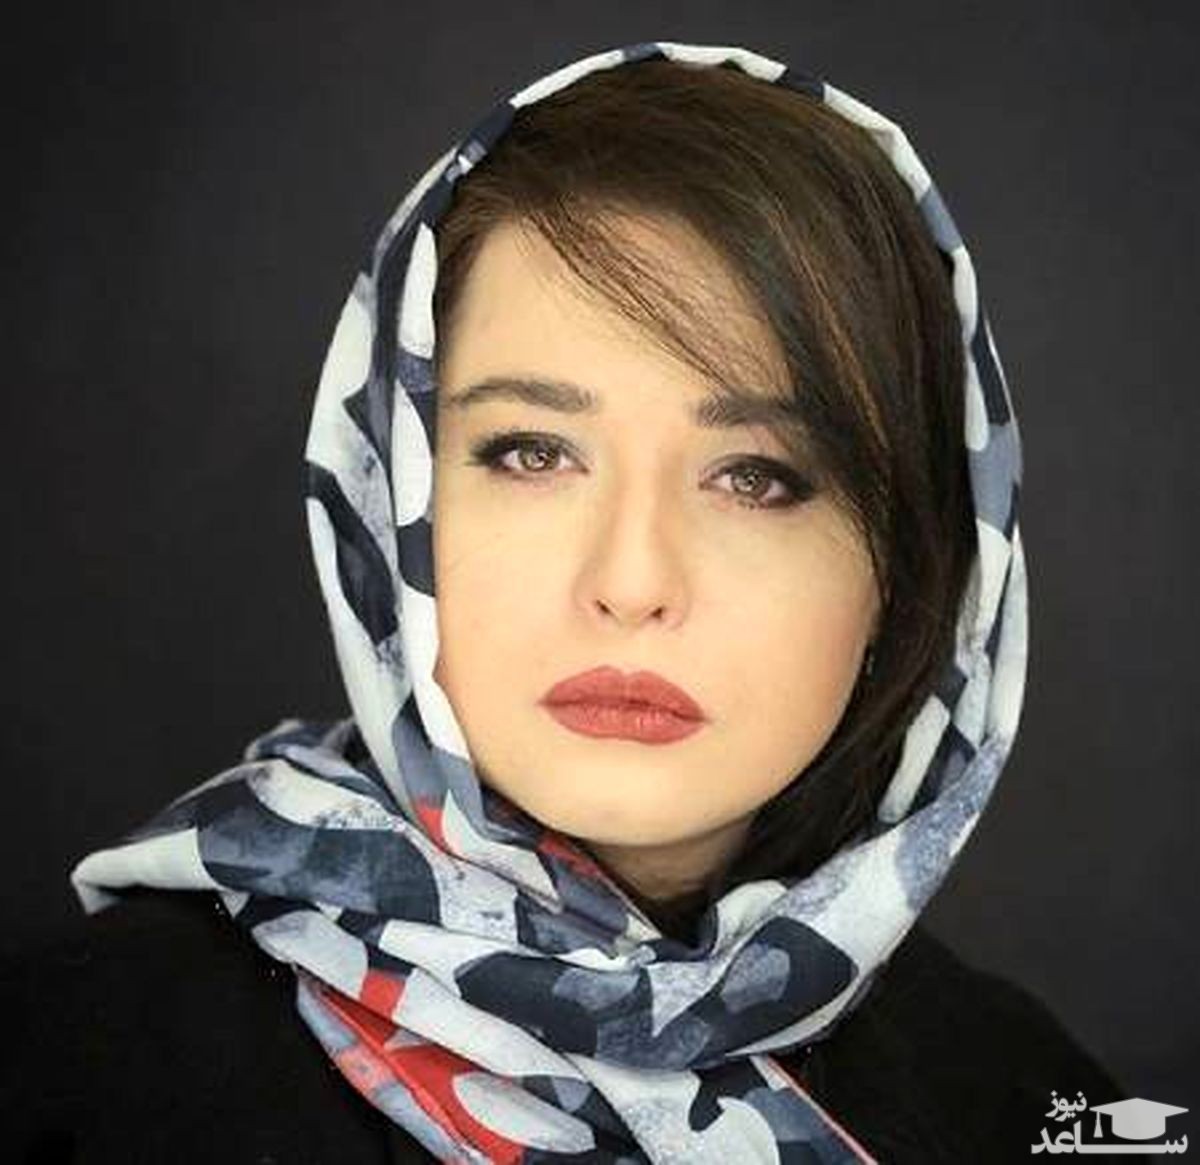 تانک سواری جالب مهراوه شریفی نیا با کلاه جنگی